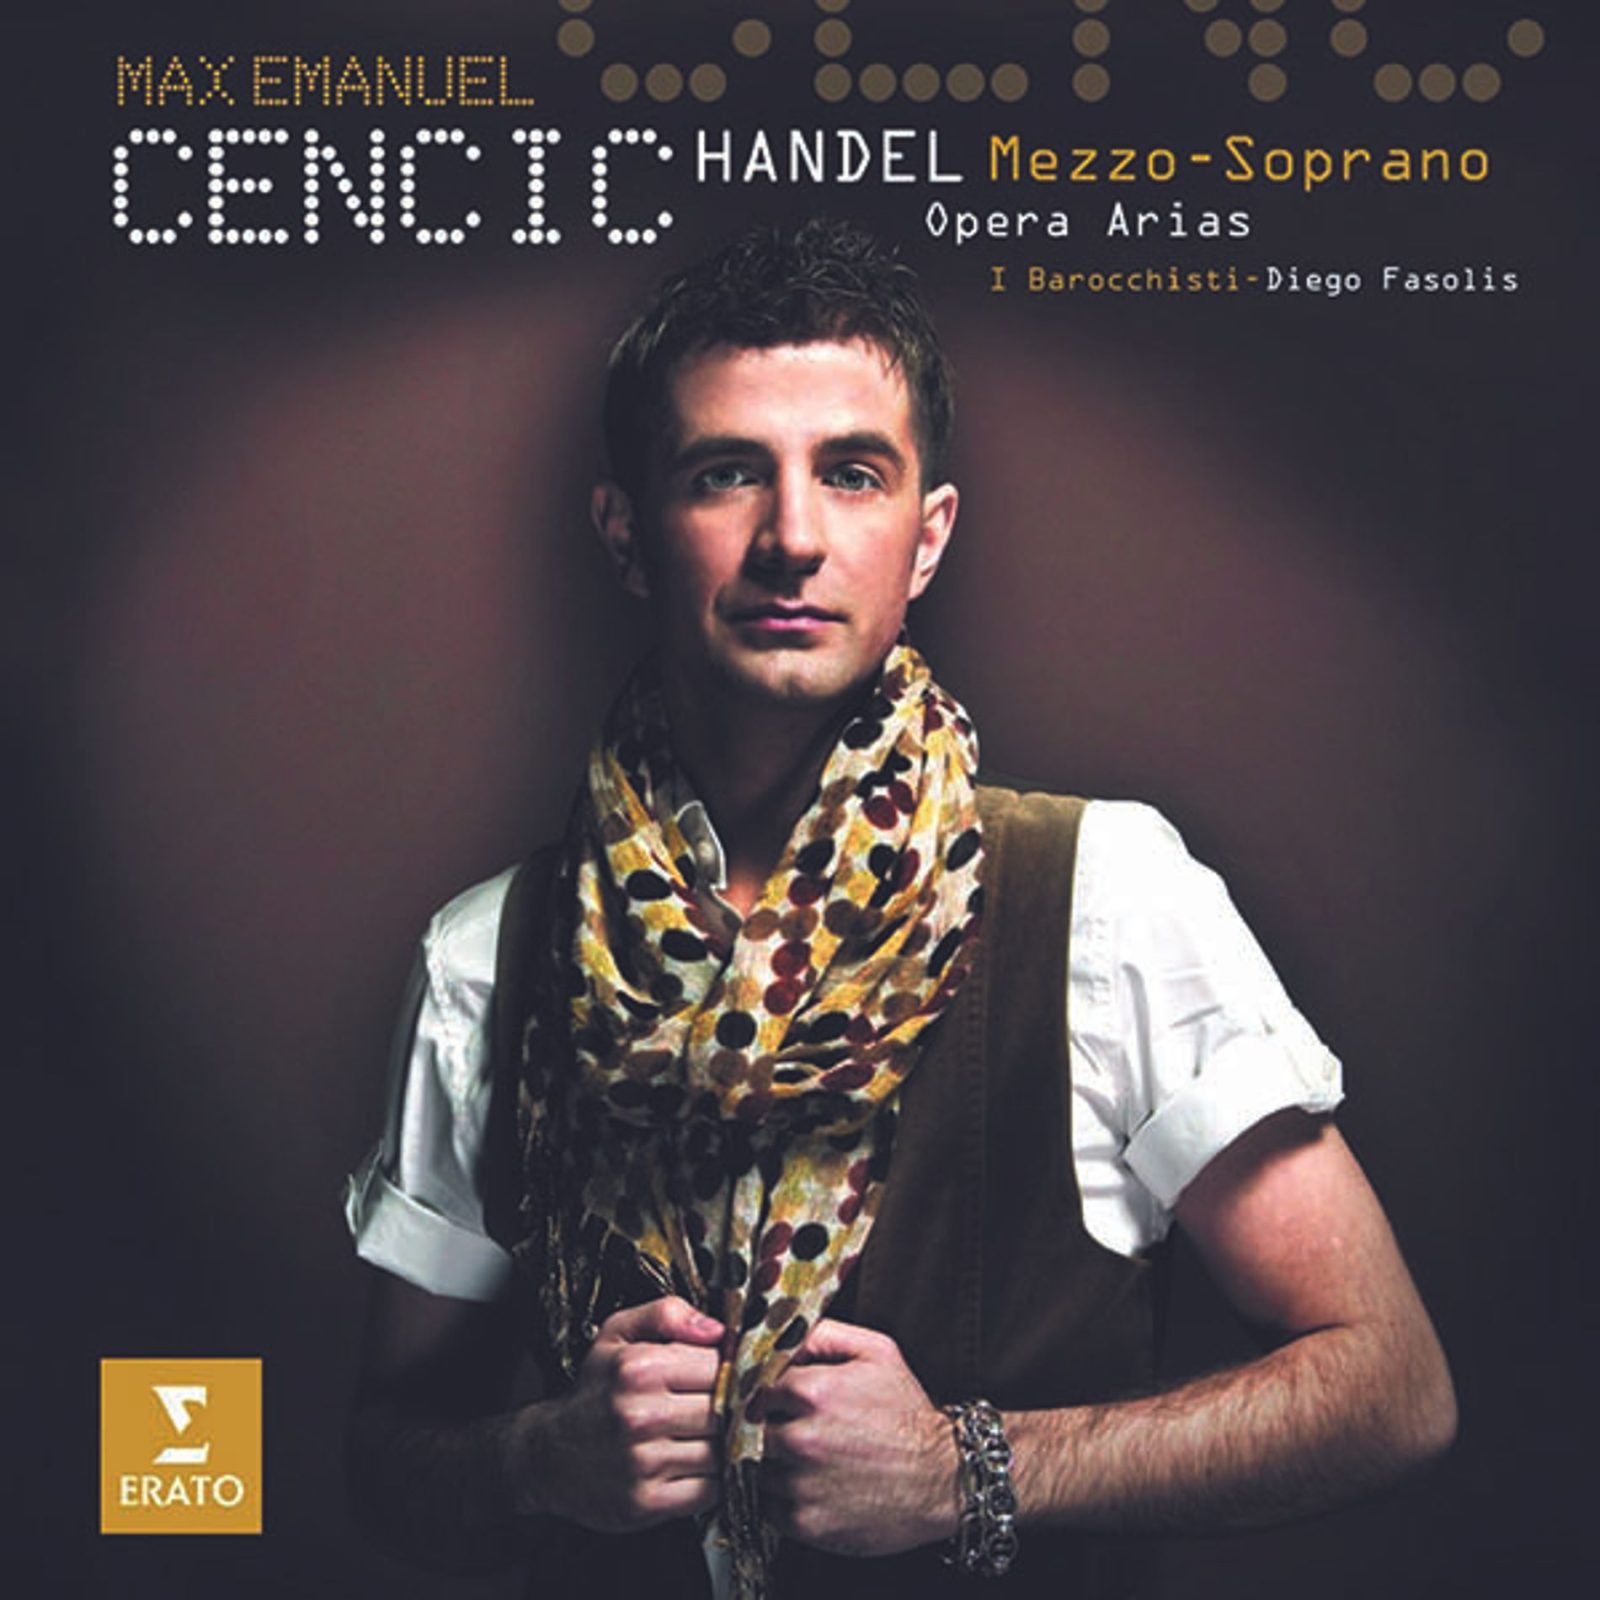 Max Emanuel Cencic - Handel Mezzo-Soprano Opera Arias